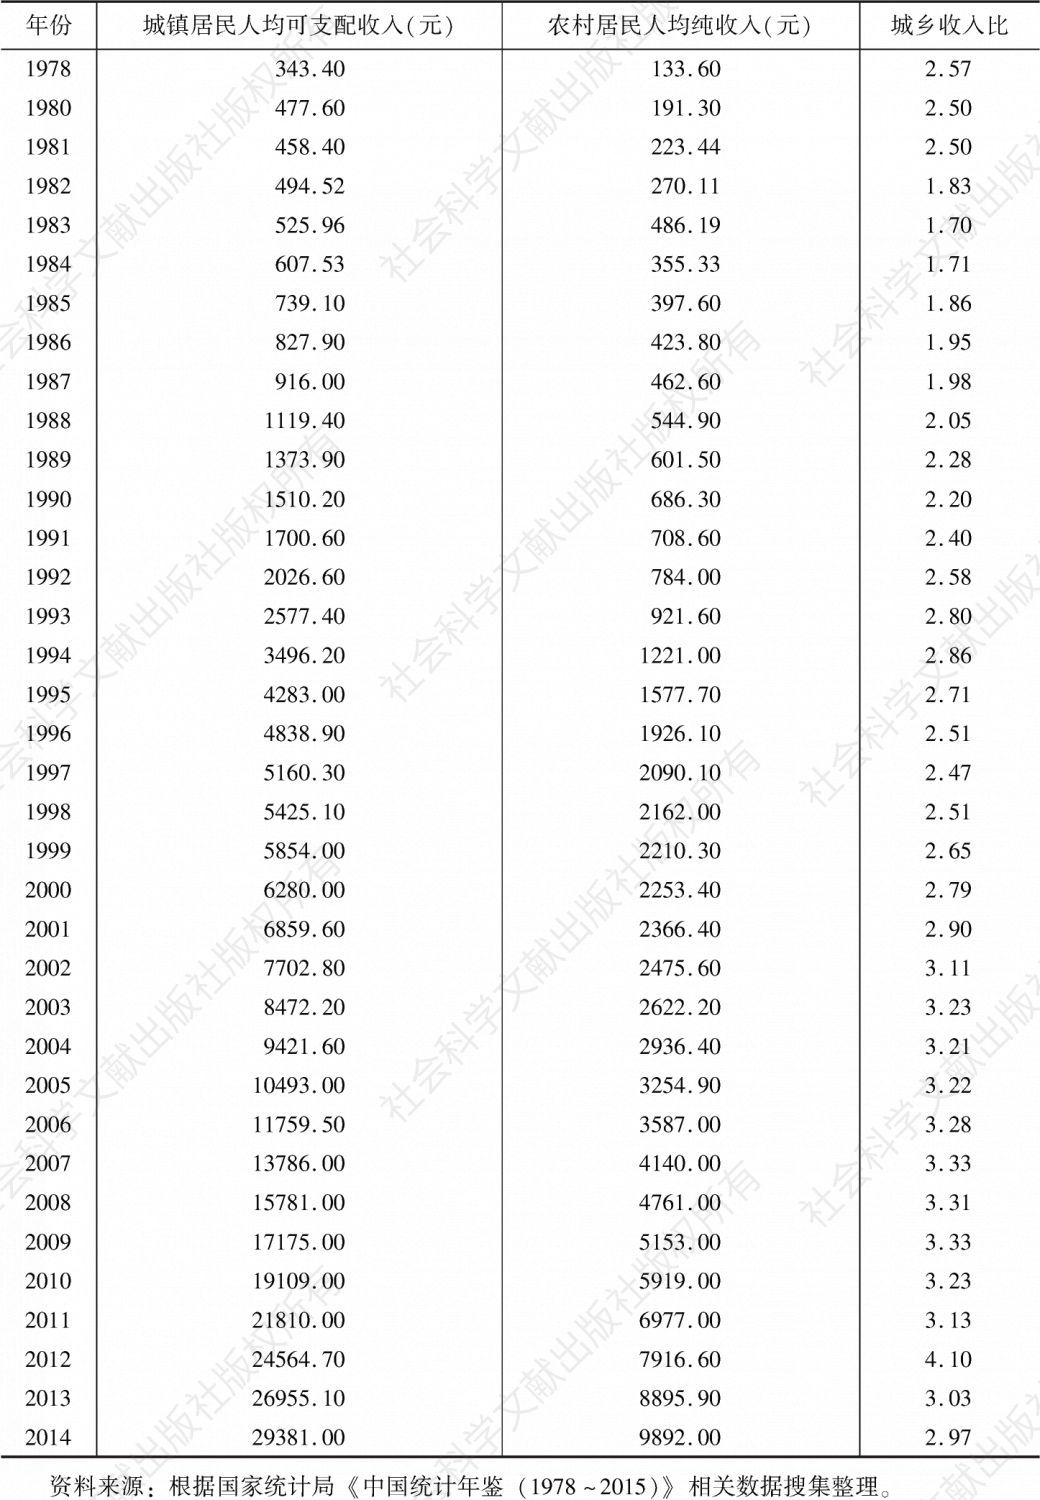 表1 我国1978～2014年城乡居民收入差距